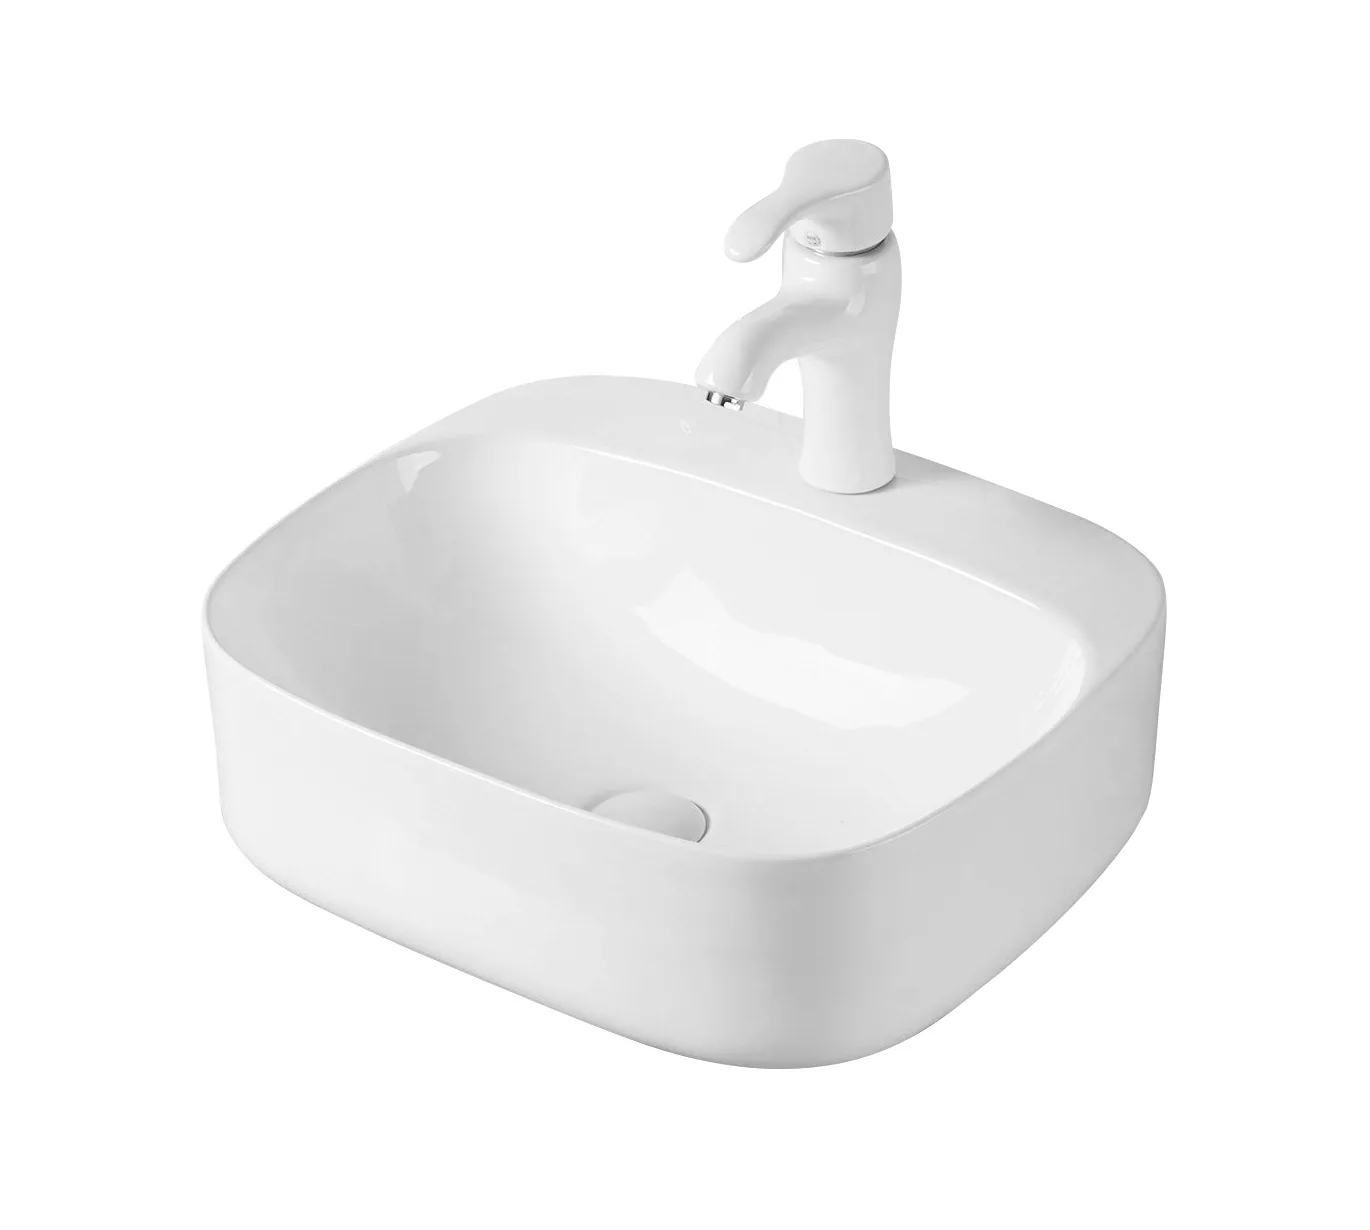 Накладная белая раковина для ванной GiD N9284 квадратная керамическая раковина накладная на столешницу bau mini квадратная 24х24 белая выпуск клик клак бронза